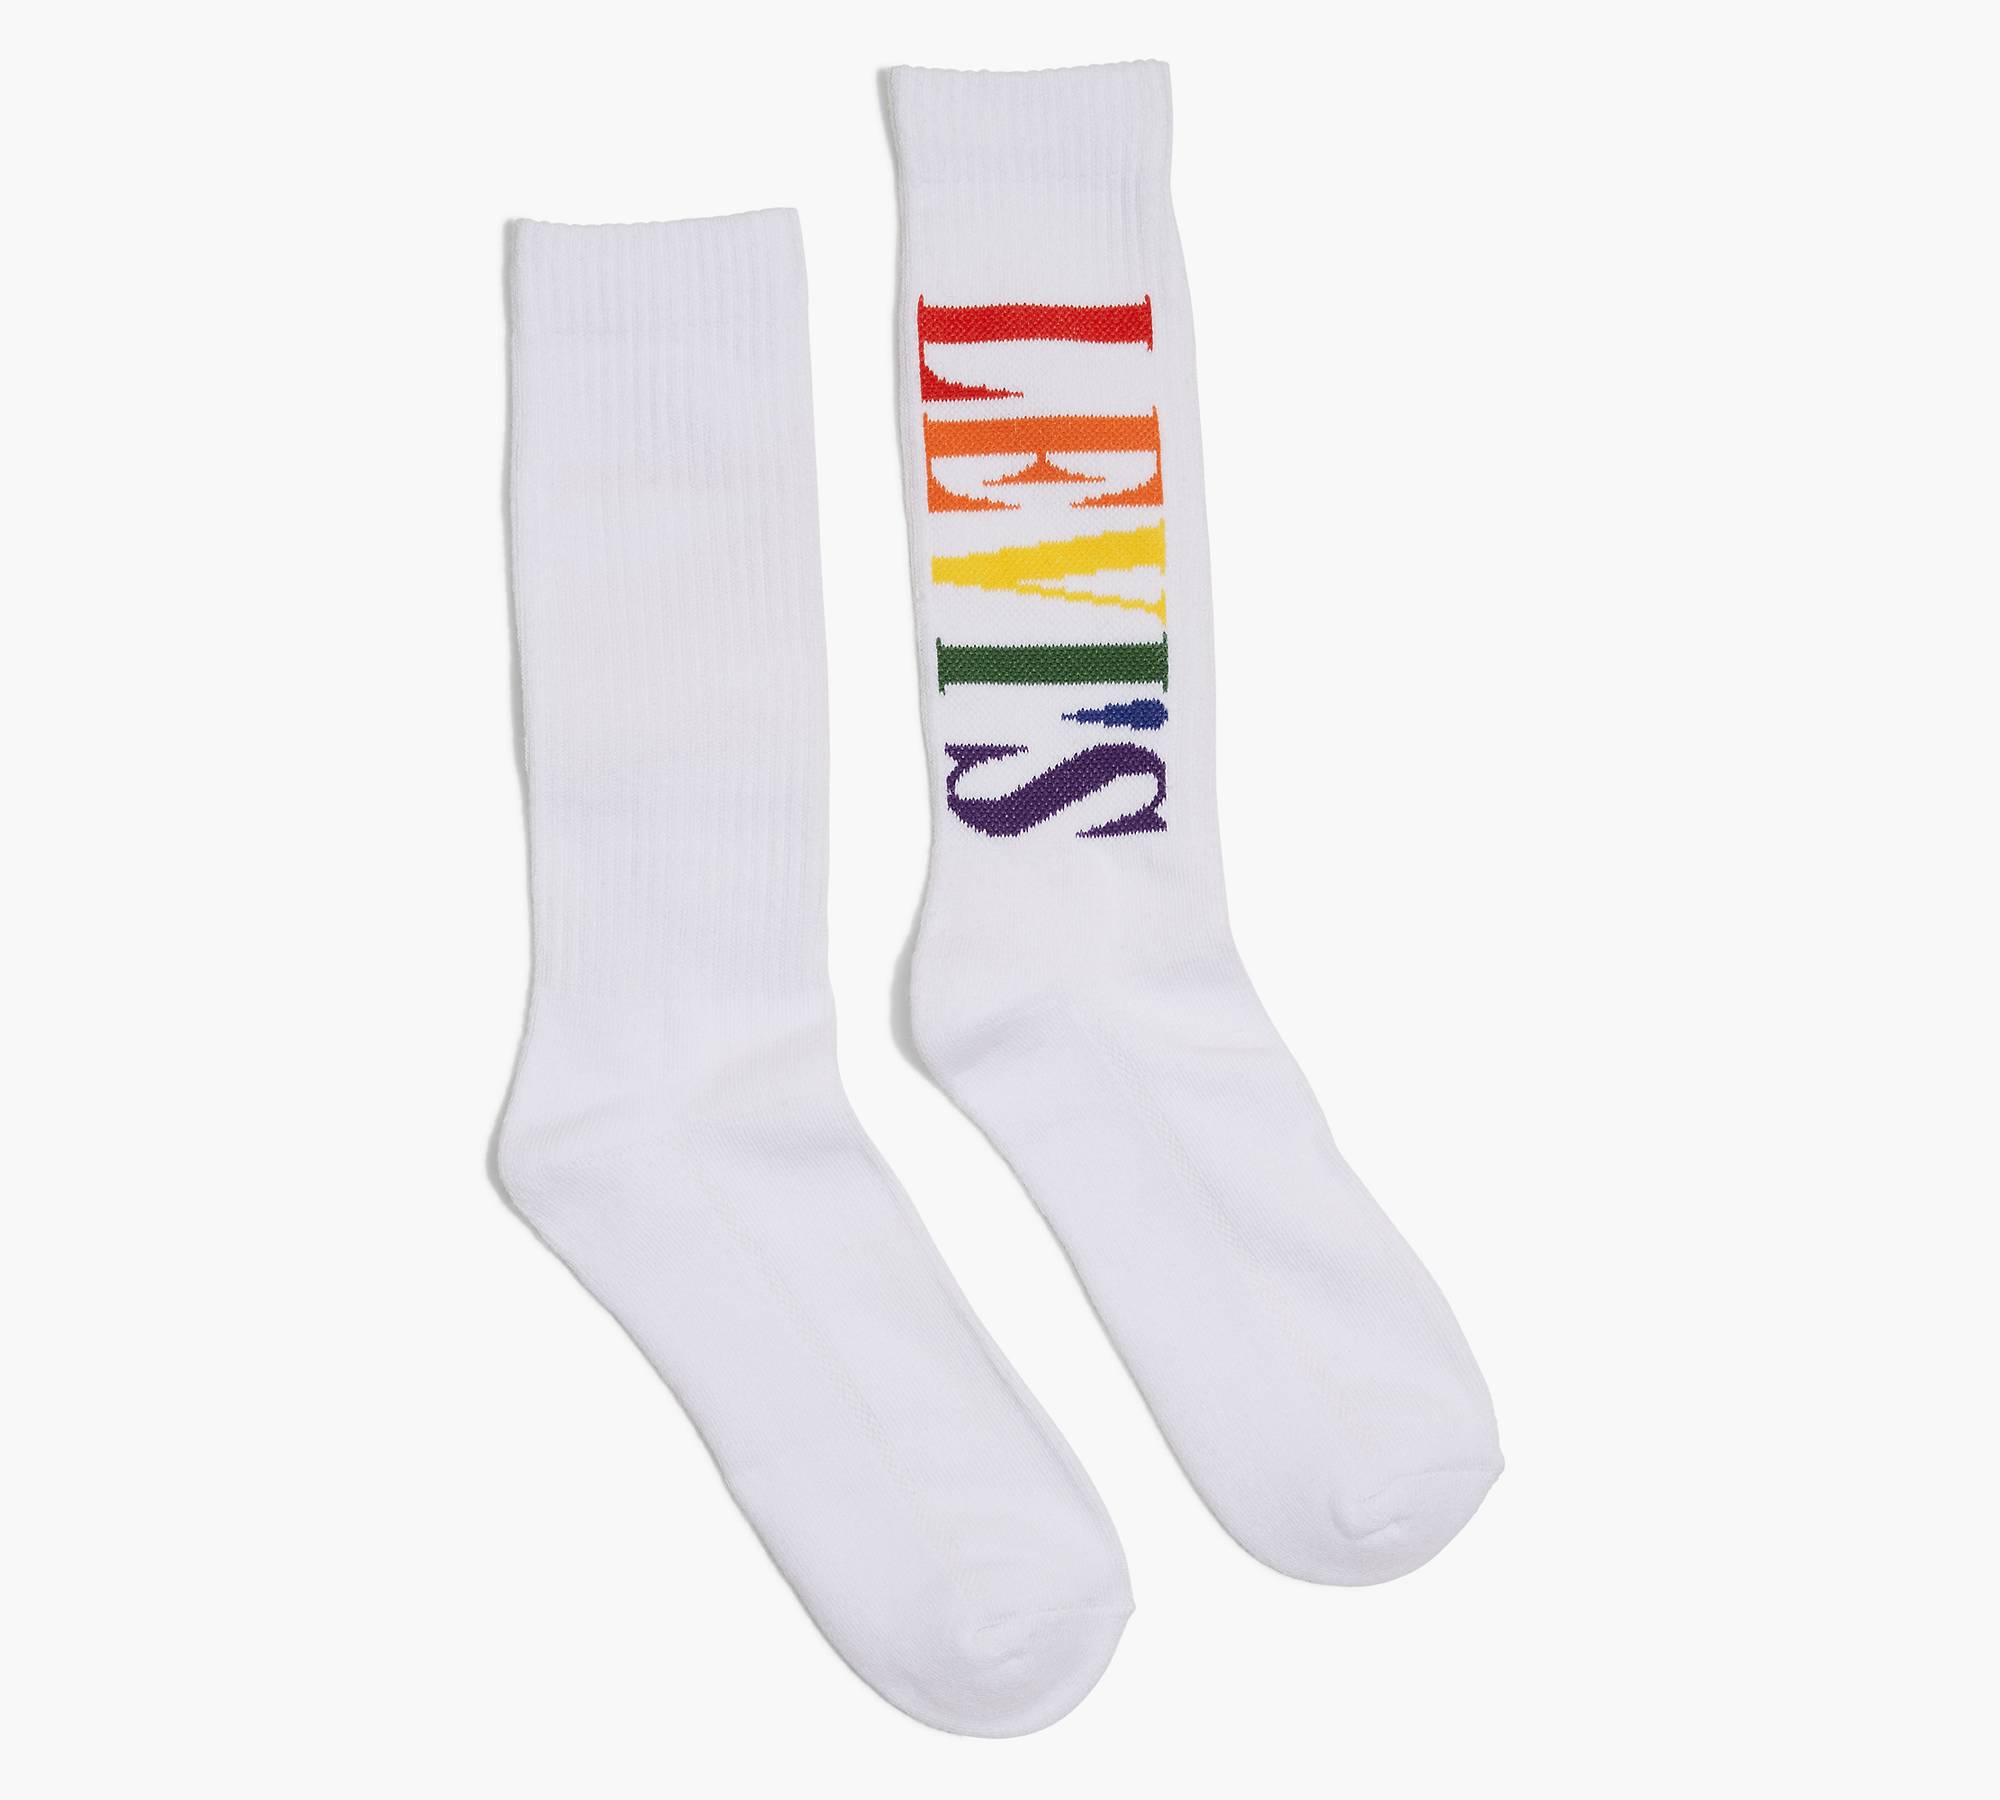 White Rainbow Crew Socks, Combed Cotton